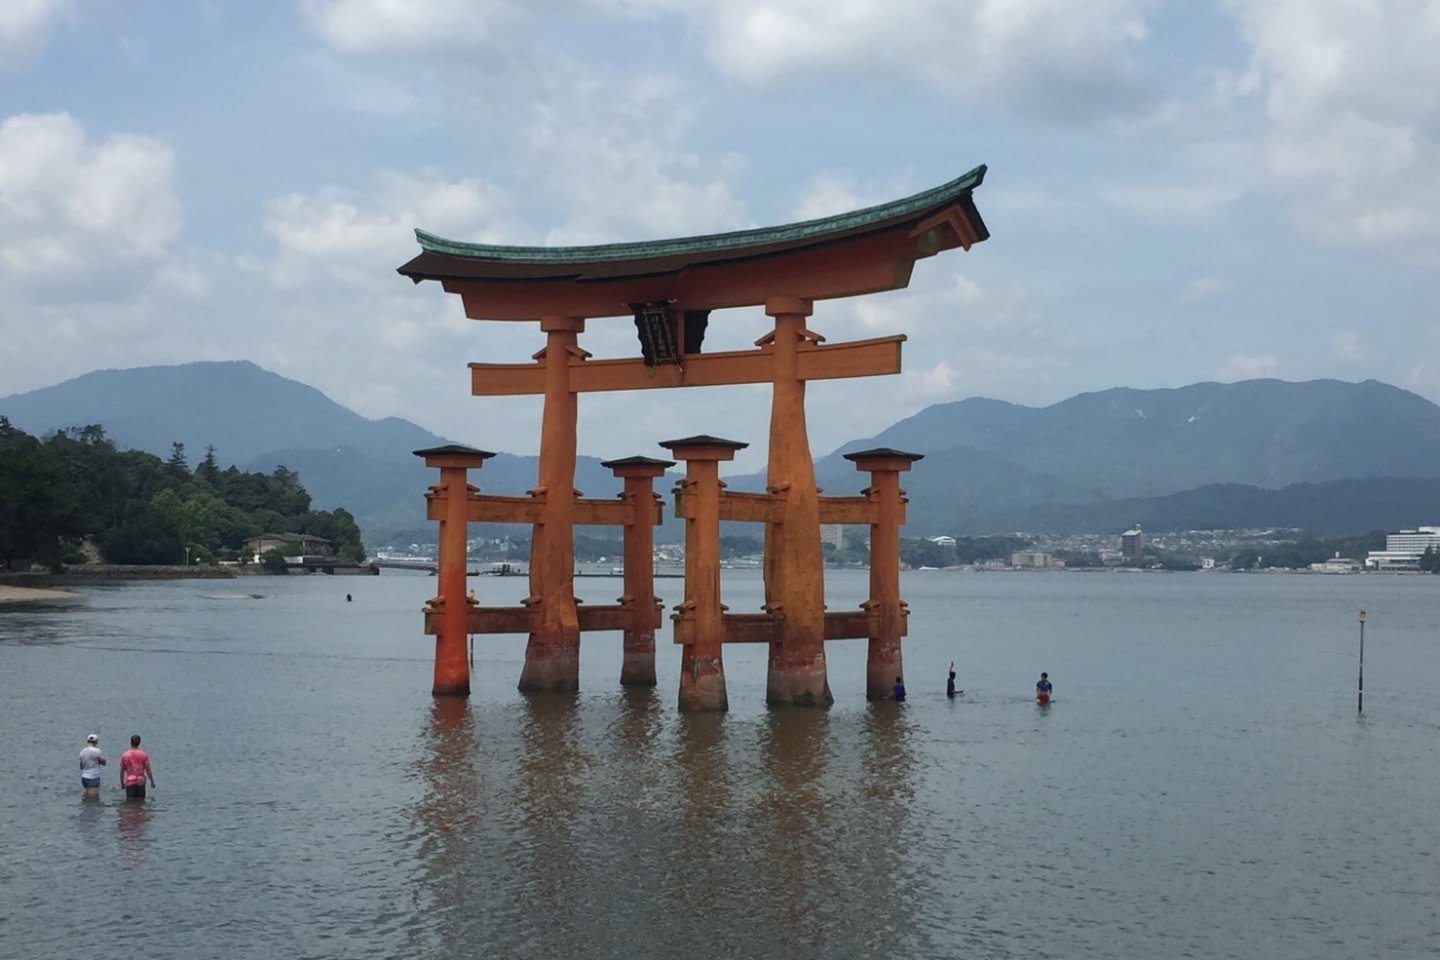 Apesar da maré não estar muito baixa, muitos visitantes aventuraram-se até ao torii para o tocar